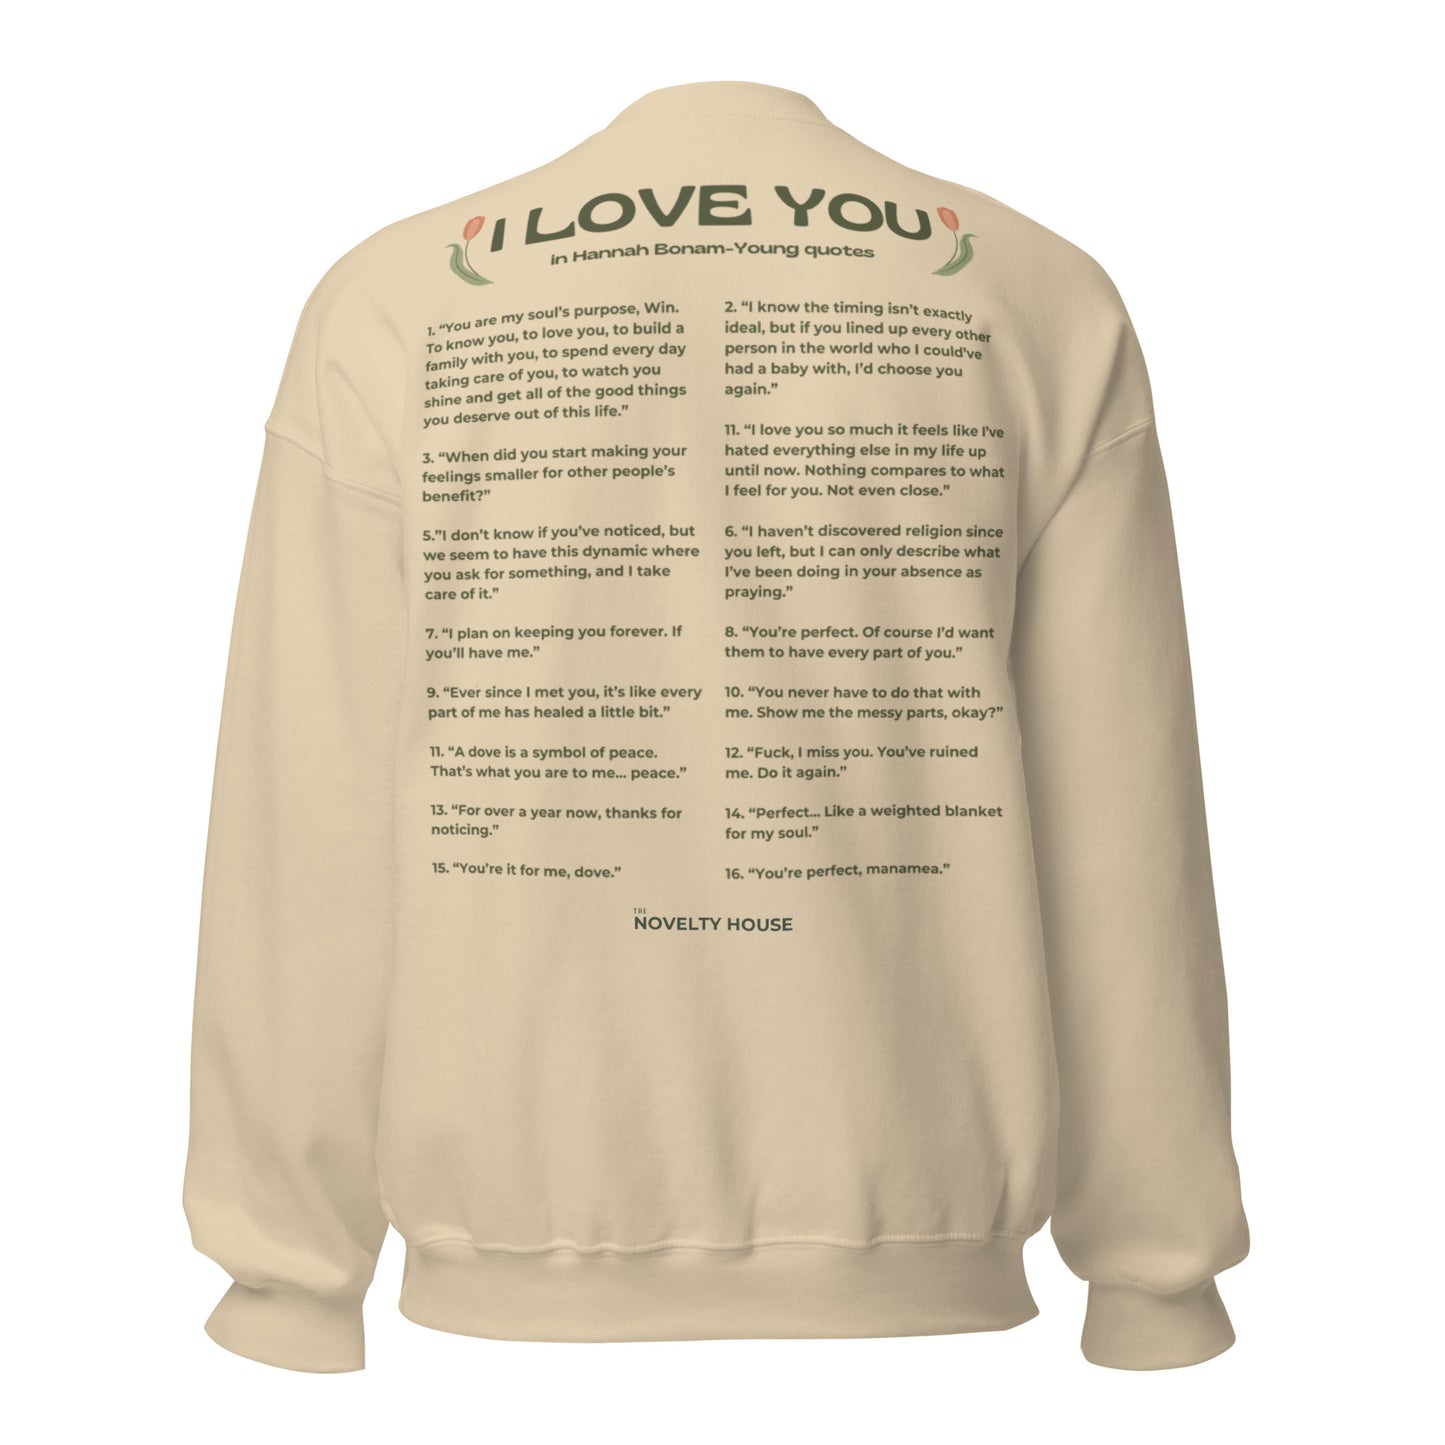 Ways To Say I Love You Sweatshirt